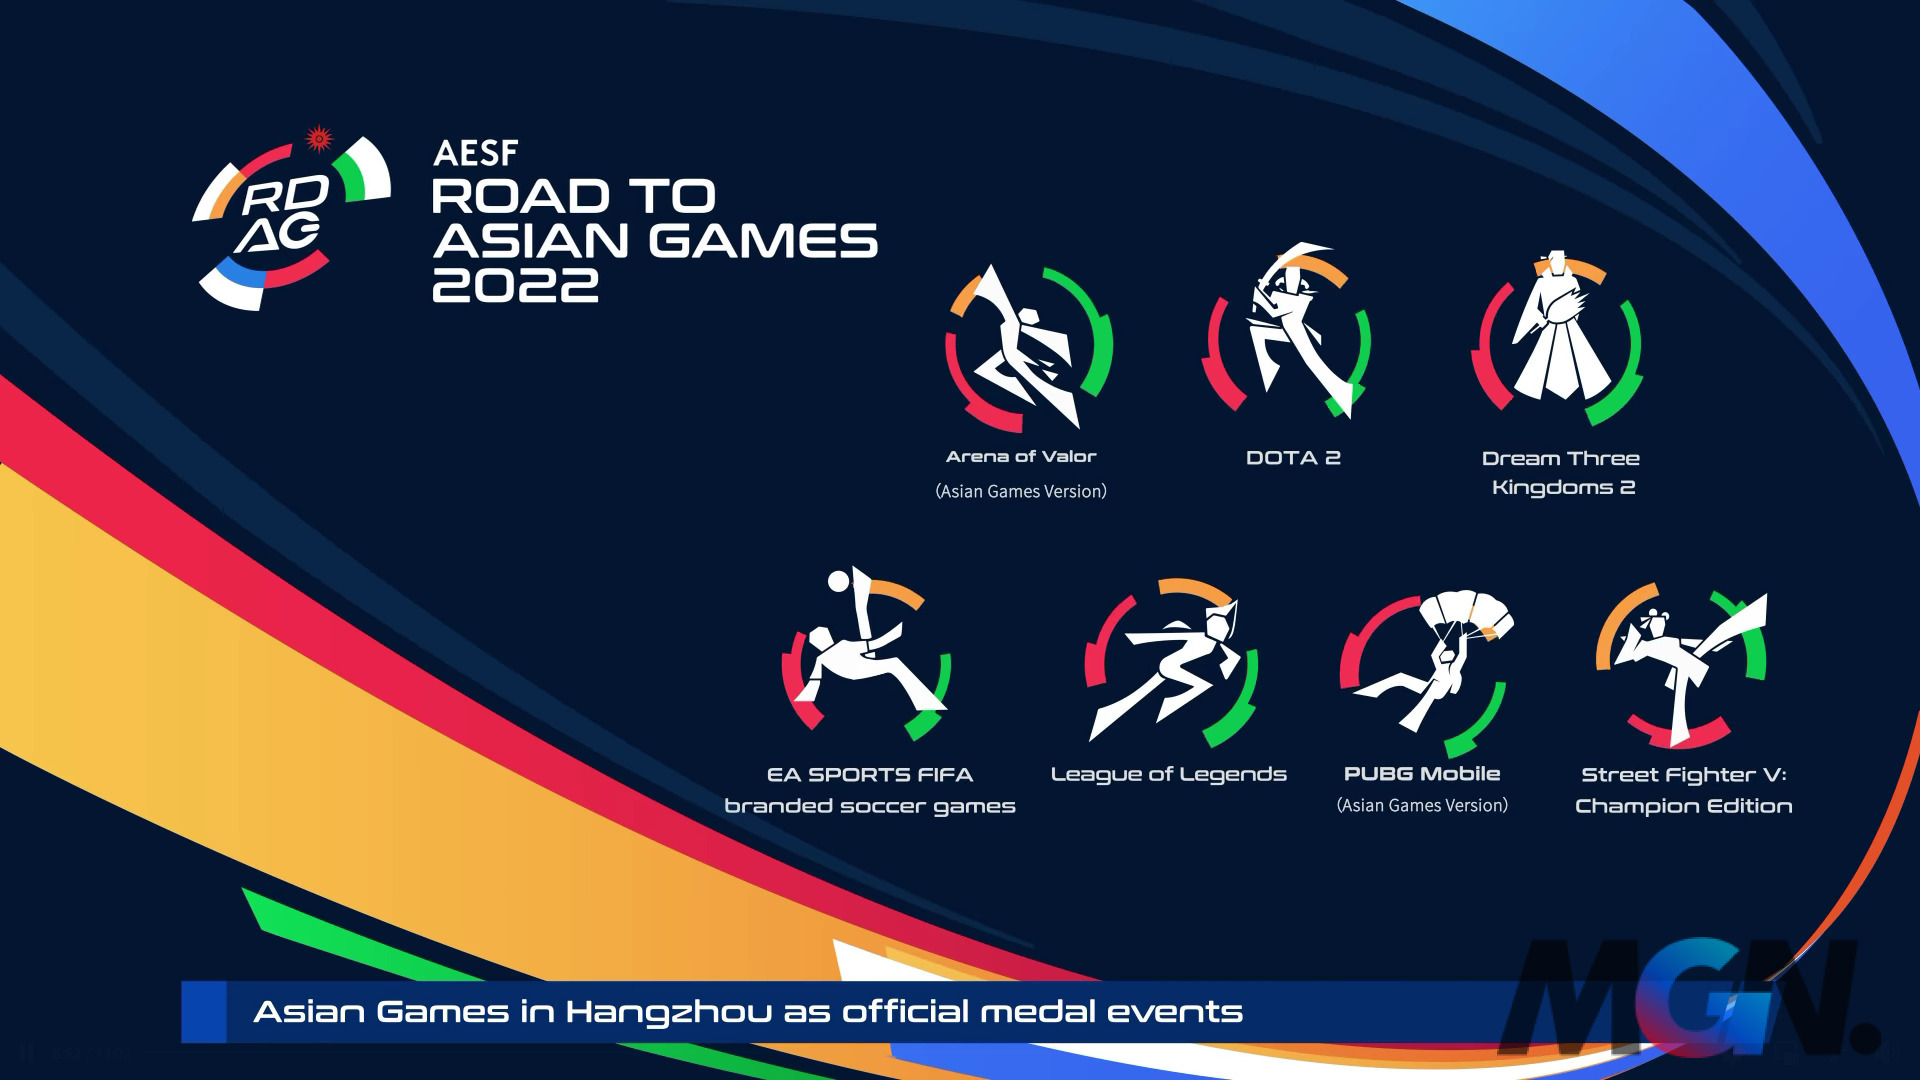 ASIAD 2022, Hangzhou Asian Games